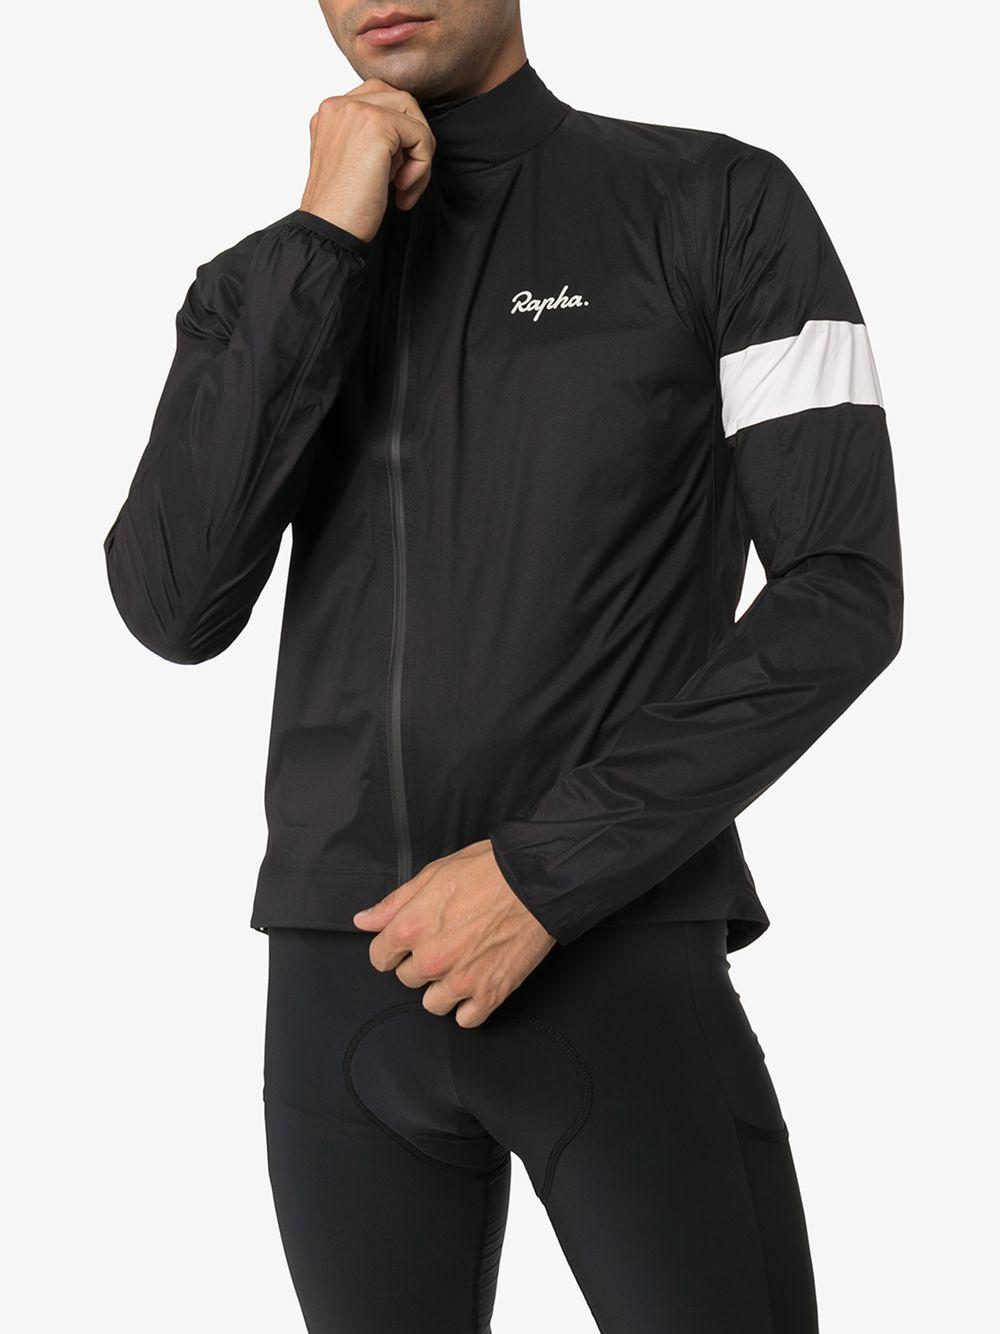 Rapha Synthetic Core Rain Jacket Ii in Black for Men - Lyst